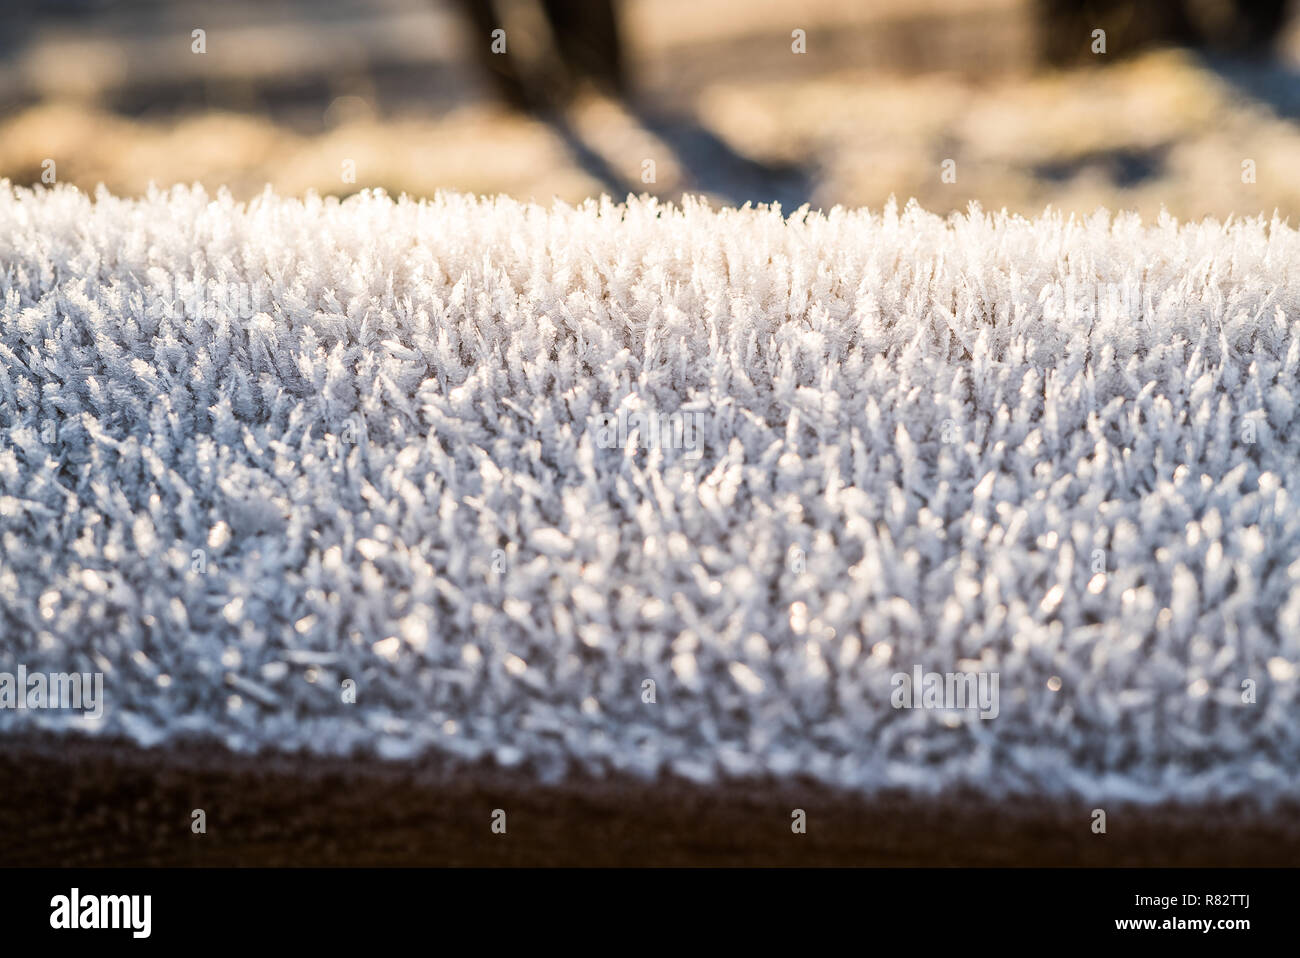 Primo piano dettaglio del cristallizzato bianco freddo trasformata per forte gradiente frost a copertura di un corrimano congelata al di fuori di un inizio fresco mattino invernale, con copyspace Foto Stock